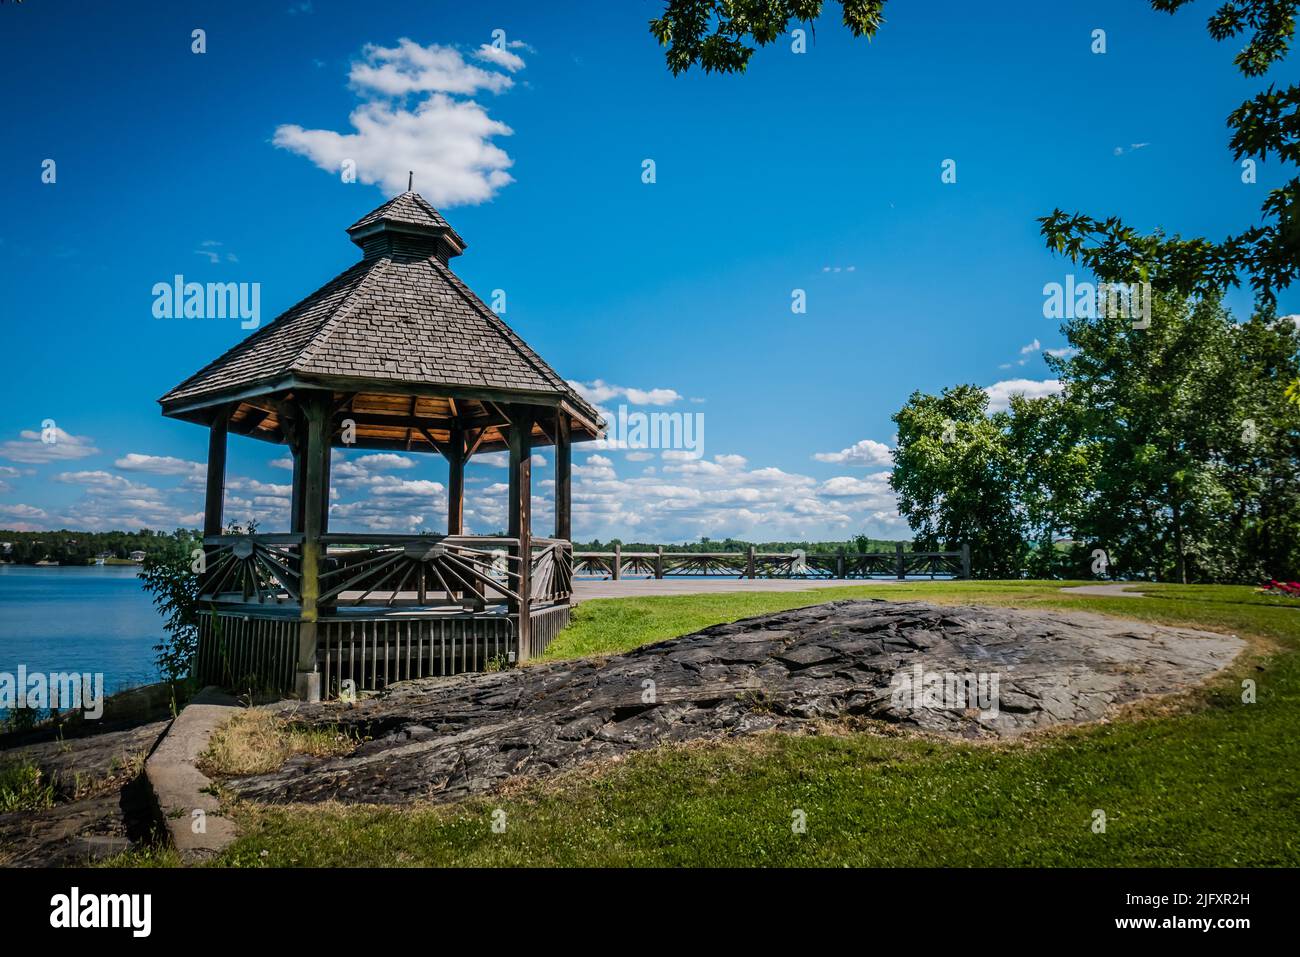 Le parc Bell est un parc urbain près du lac Ramsey, Sudbury, Ontario, Canada. Il comprend une promenade, des monuments commémoratifs, un amphithéâtre, des belvédères et des jardins. Banque D'Images